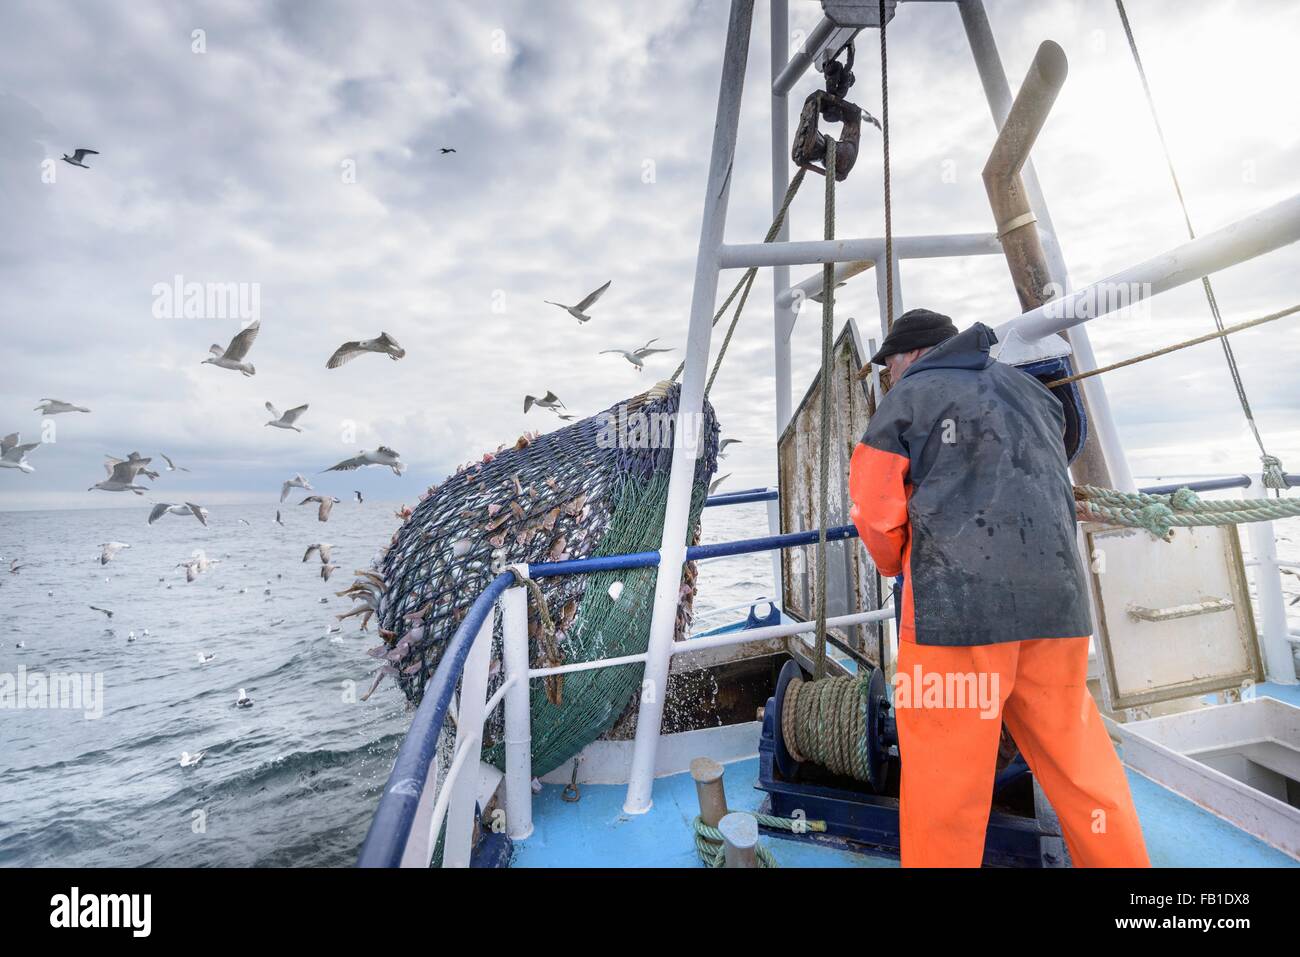 Lo svuotamento del pescatore net pieno di pesci in attesa sul peschereccio per traino Foto Stock